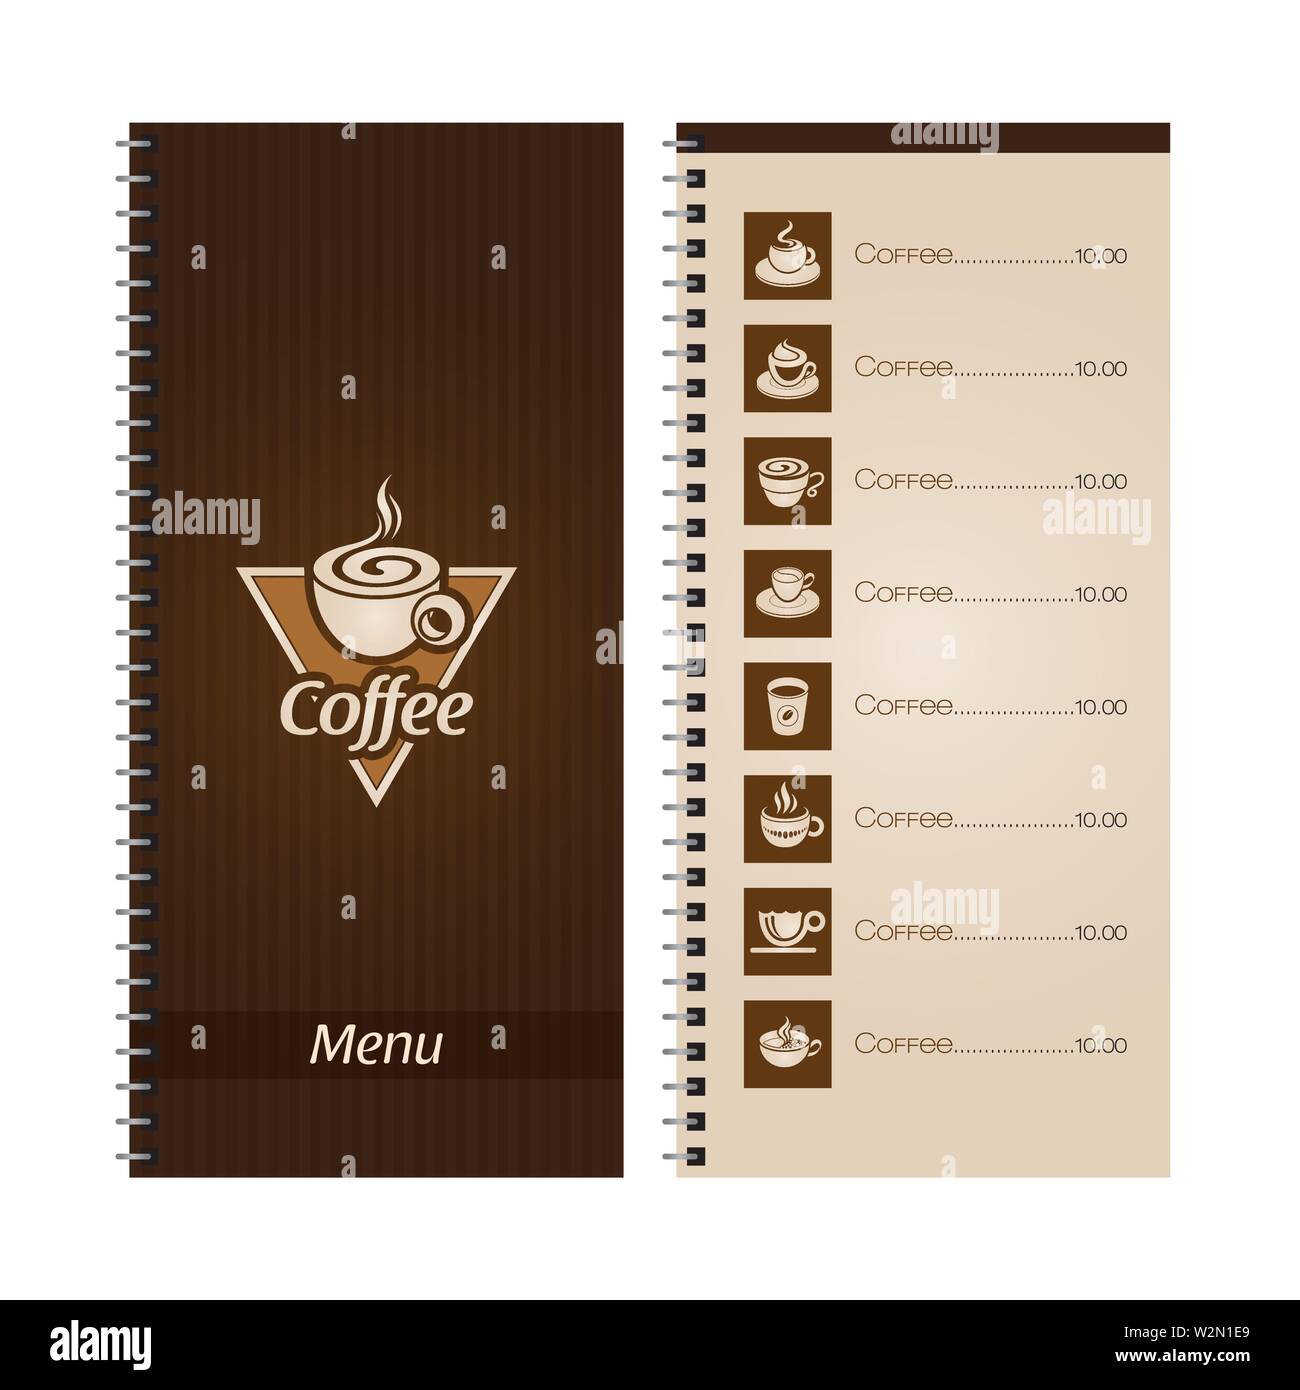 Kaffee Speisekarte für verschiedene Arten von Kaffee Stock Vektor